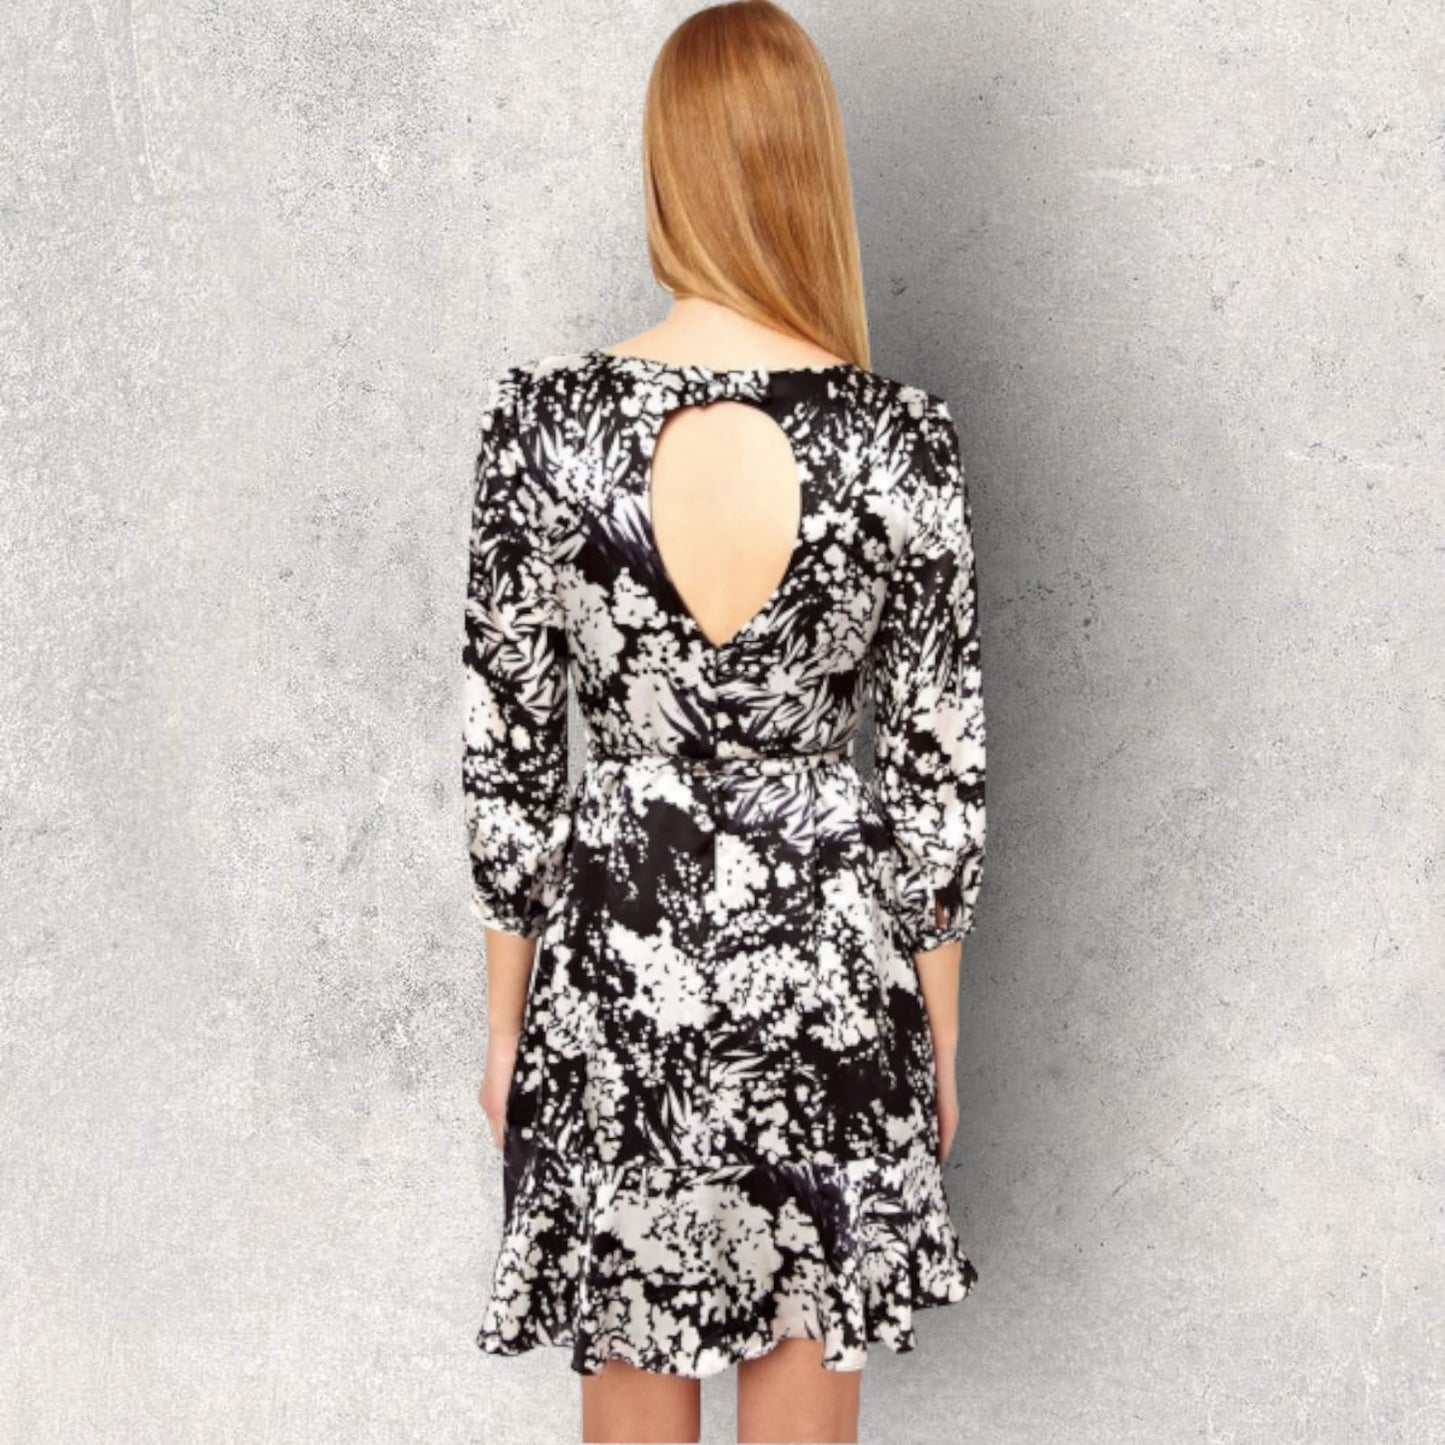 Karen Millen Fluid Print Bow Silk Dress, Black UK 12 US 8 EU 40 BNWT Timeless Fashions